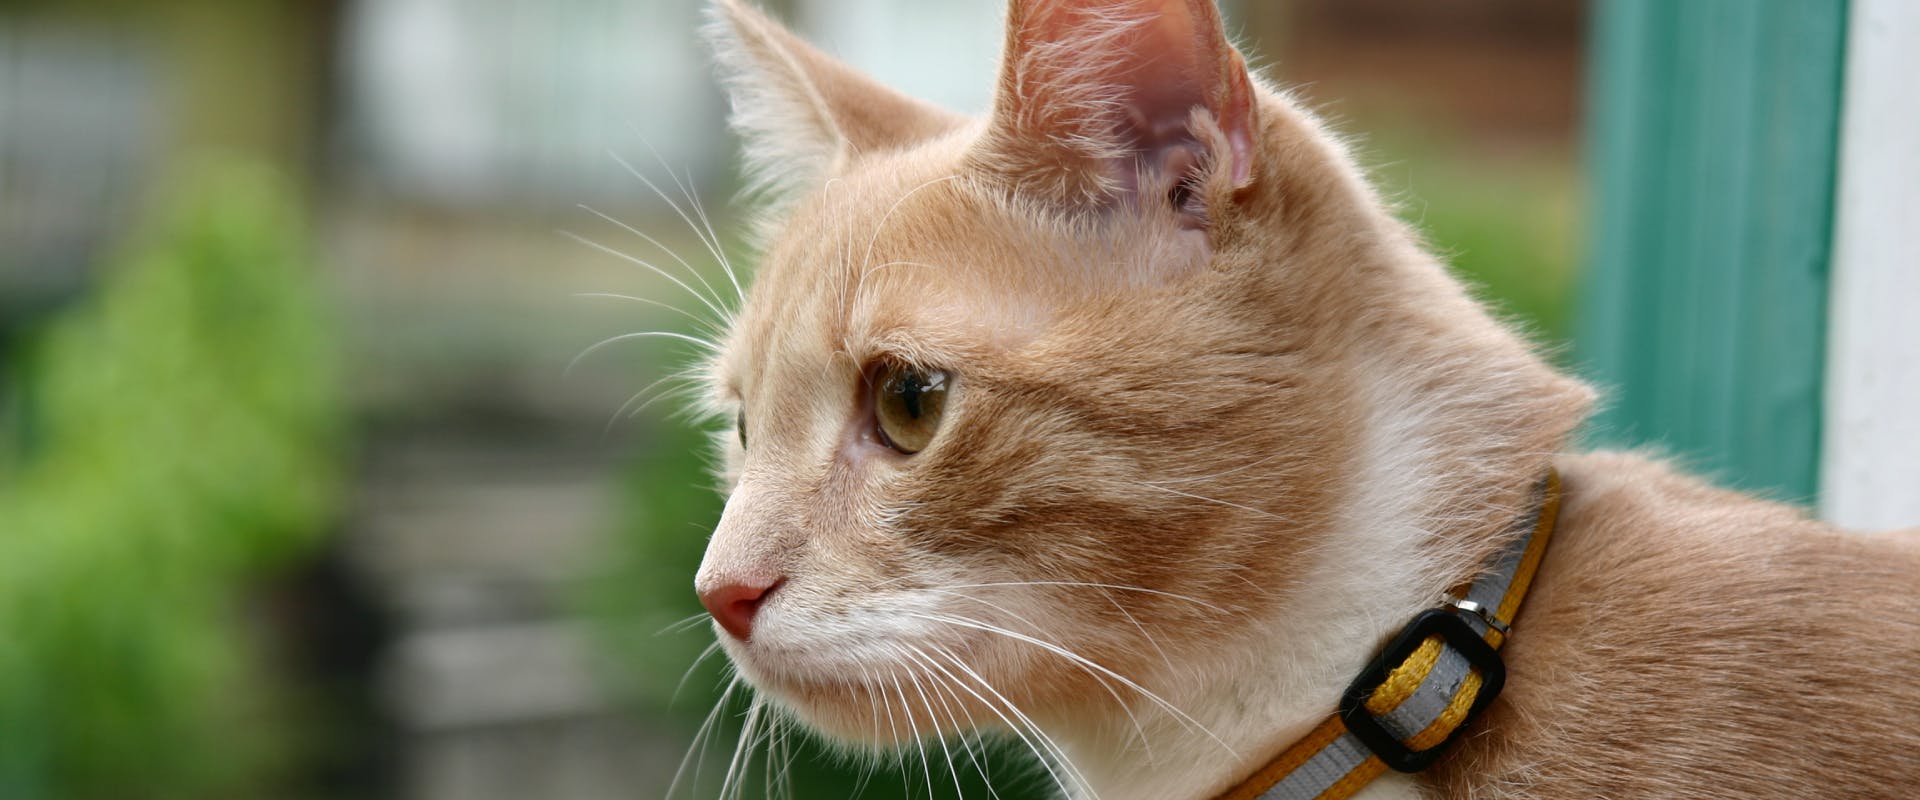 A cat wearing a collar.